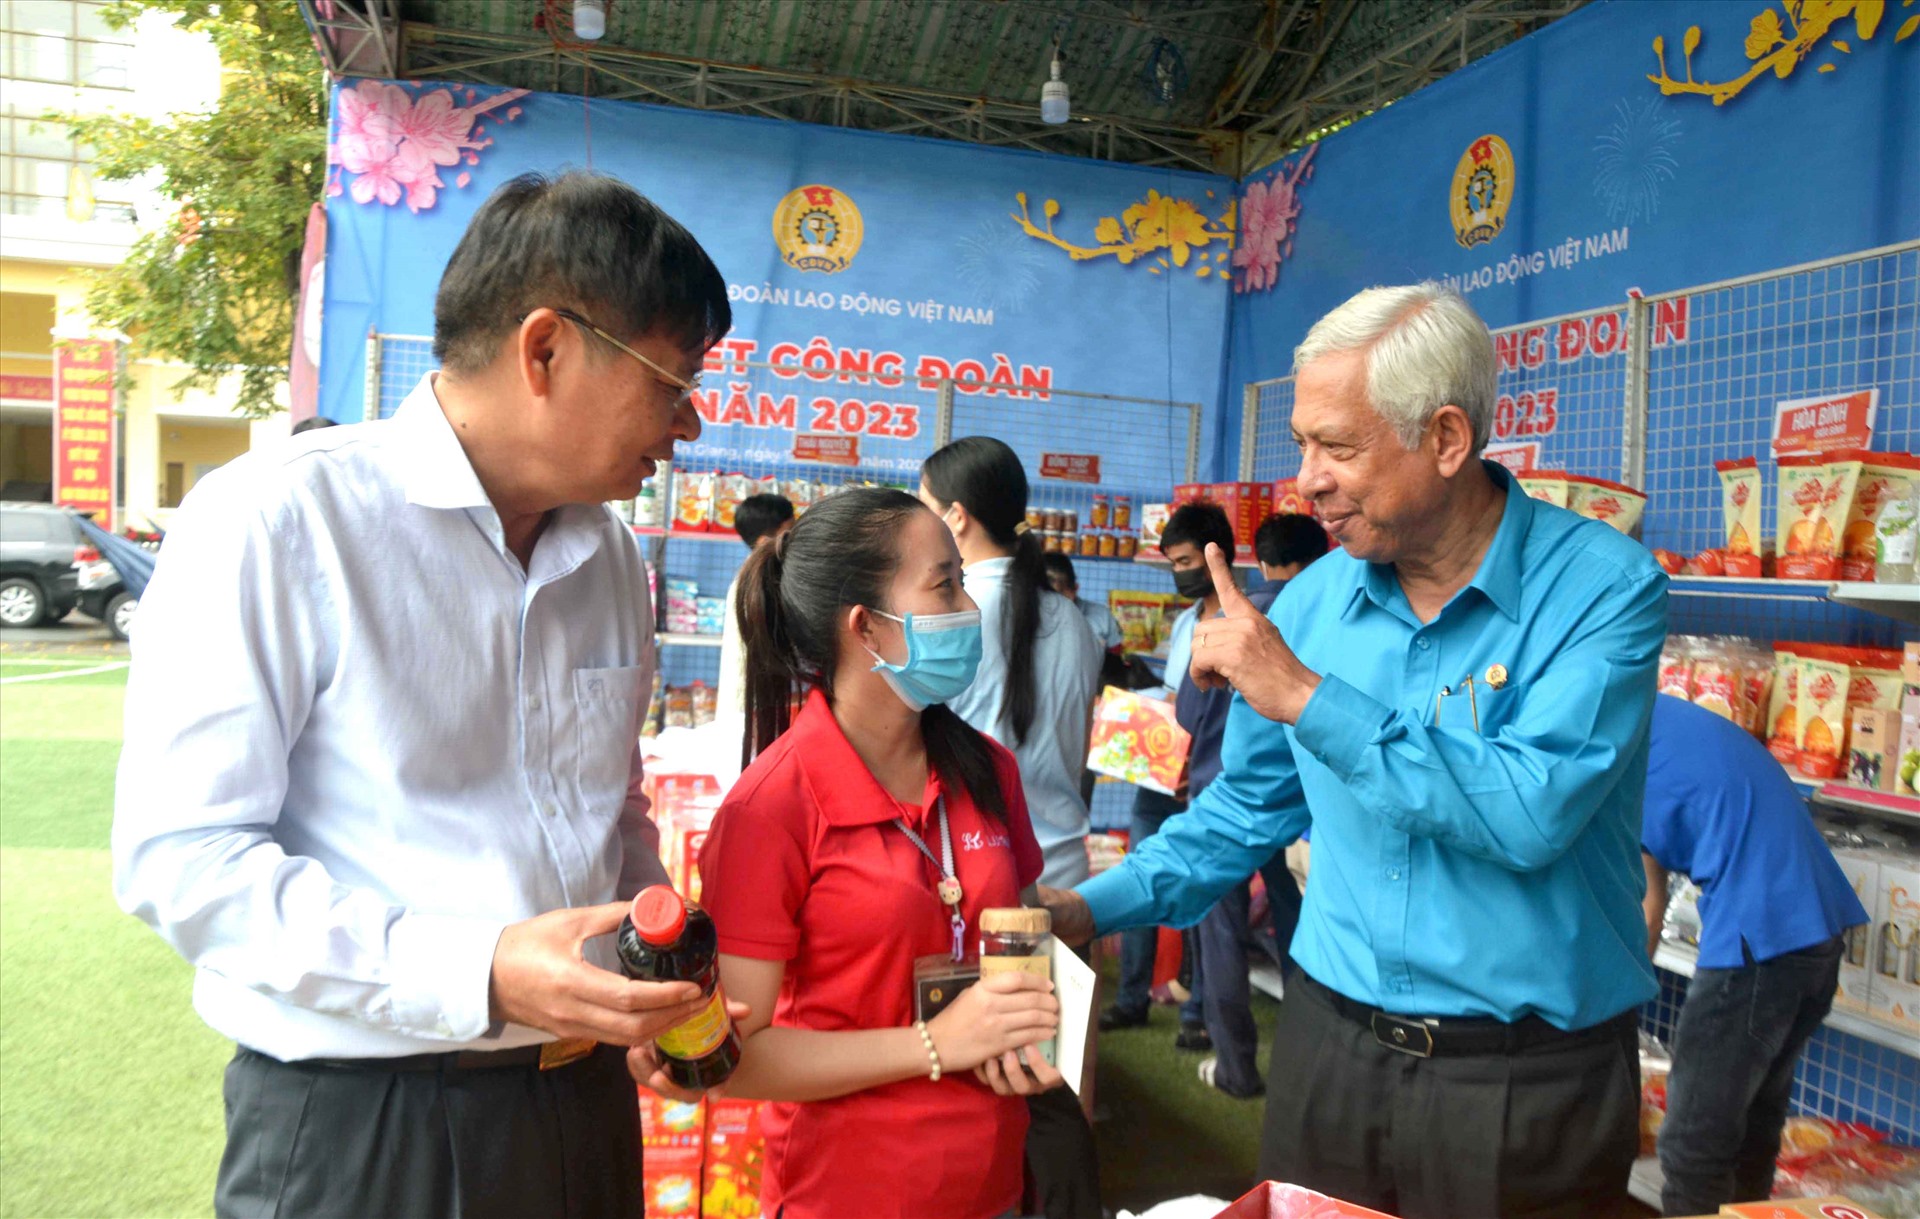 Chủ tịch LĐLĐ tỉnh An Giang thăm hỏi đoàn viên tại sự kiện Chợ Tết Công đoàn. Ảnh: Lâm Điền